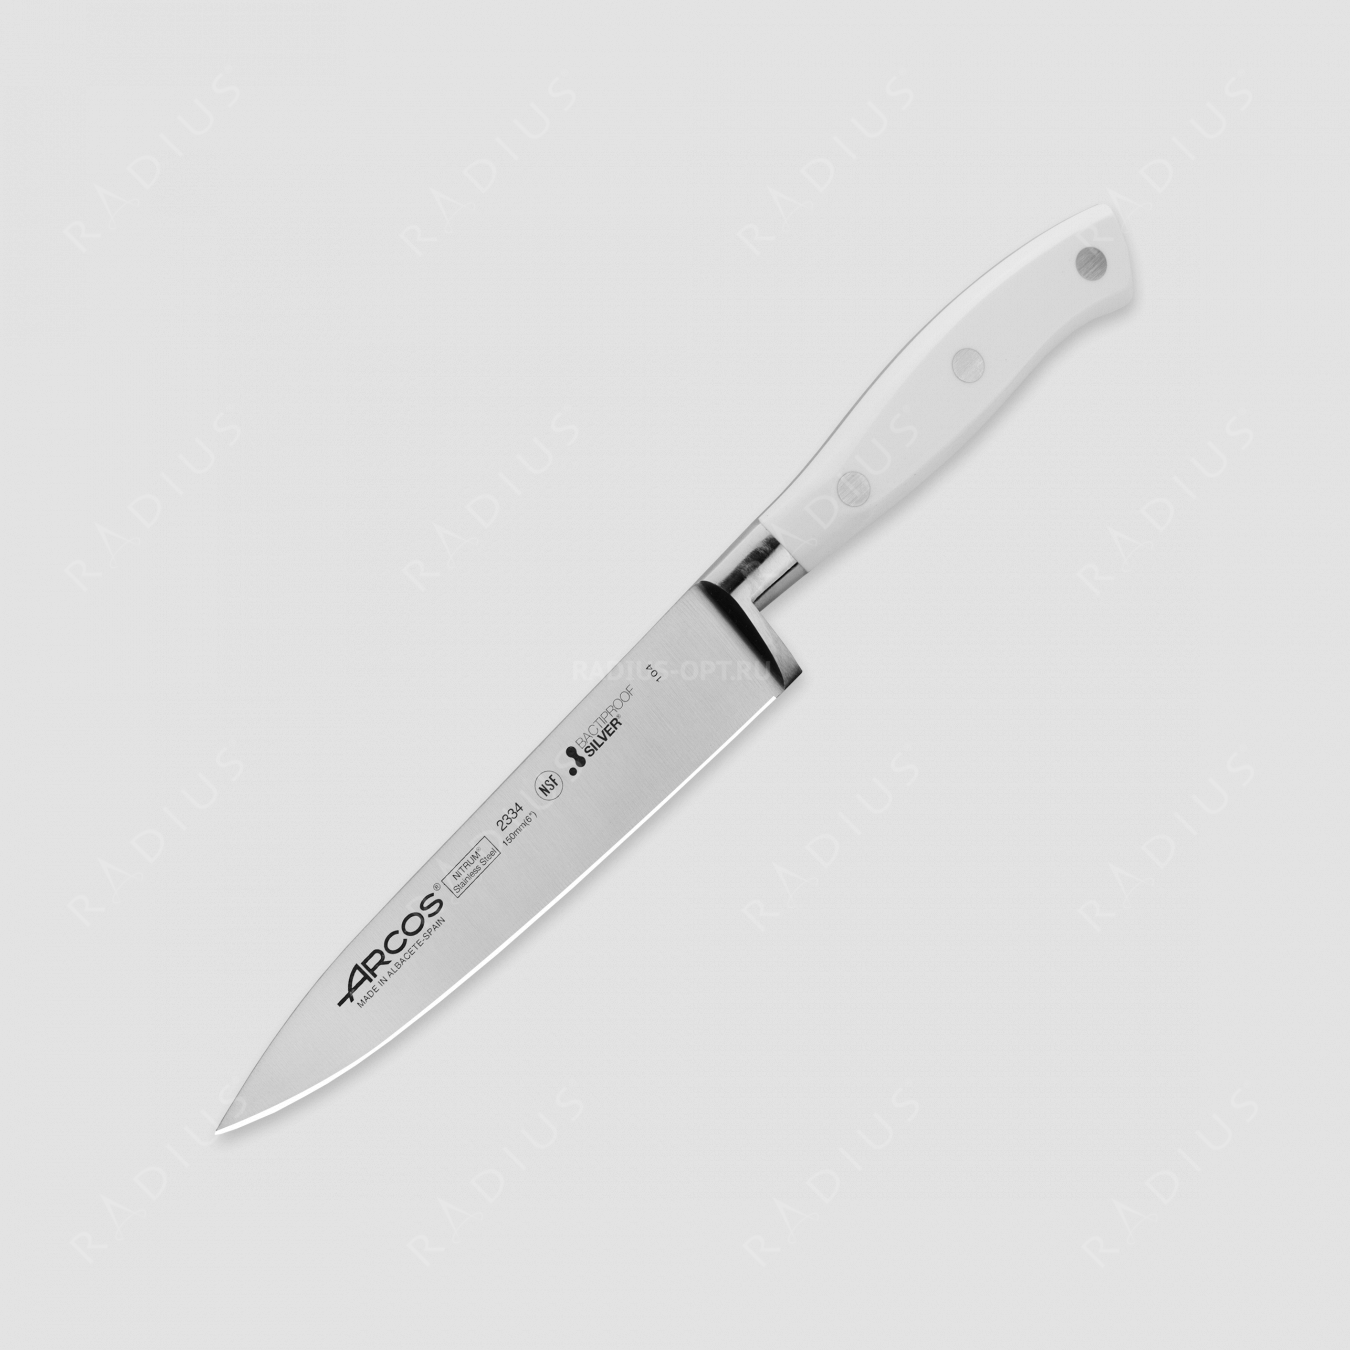 Профессиональный поварской кухонный нож 15 см, серия Riviera Blanca, ARCOS, Испания